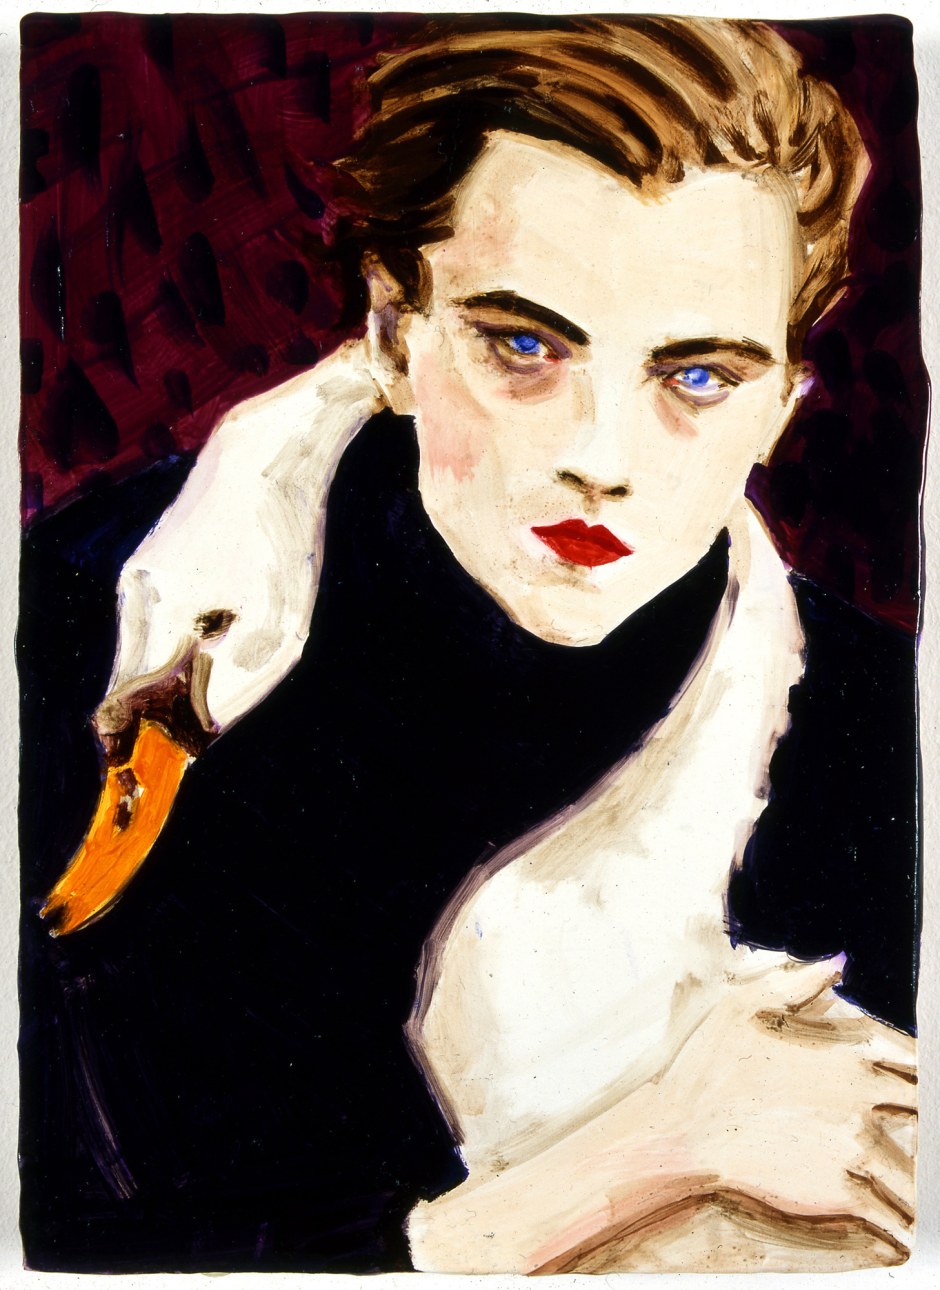 Swan [Leonardo DiCaprio], 1998  oil on board  27.94 x 20.32 cm 11 x 8 in.